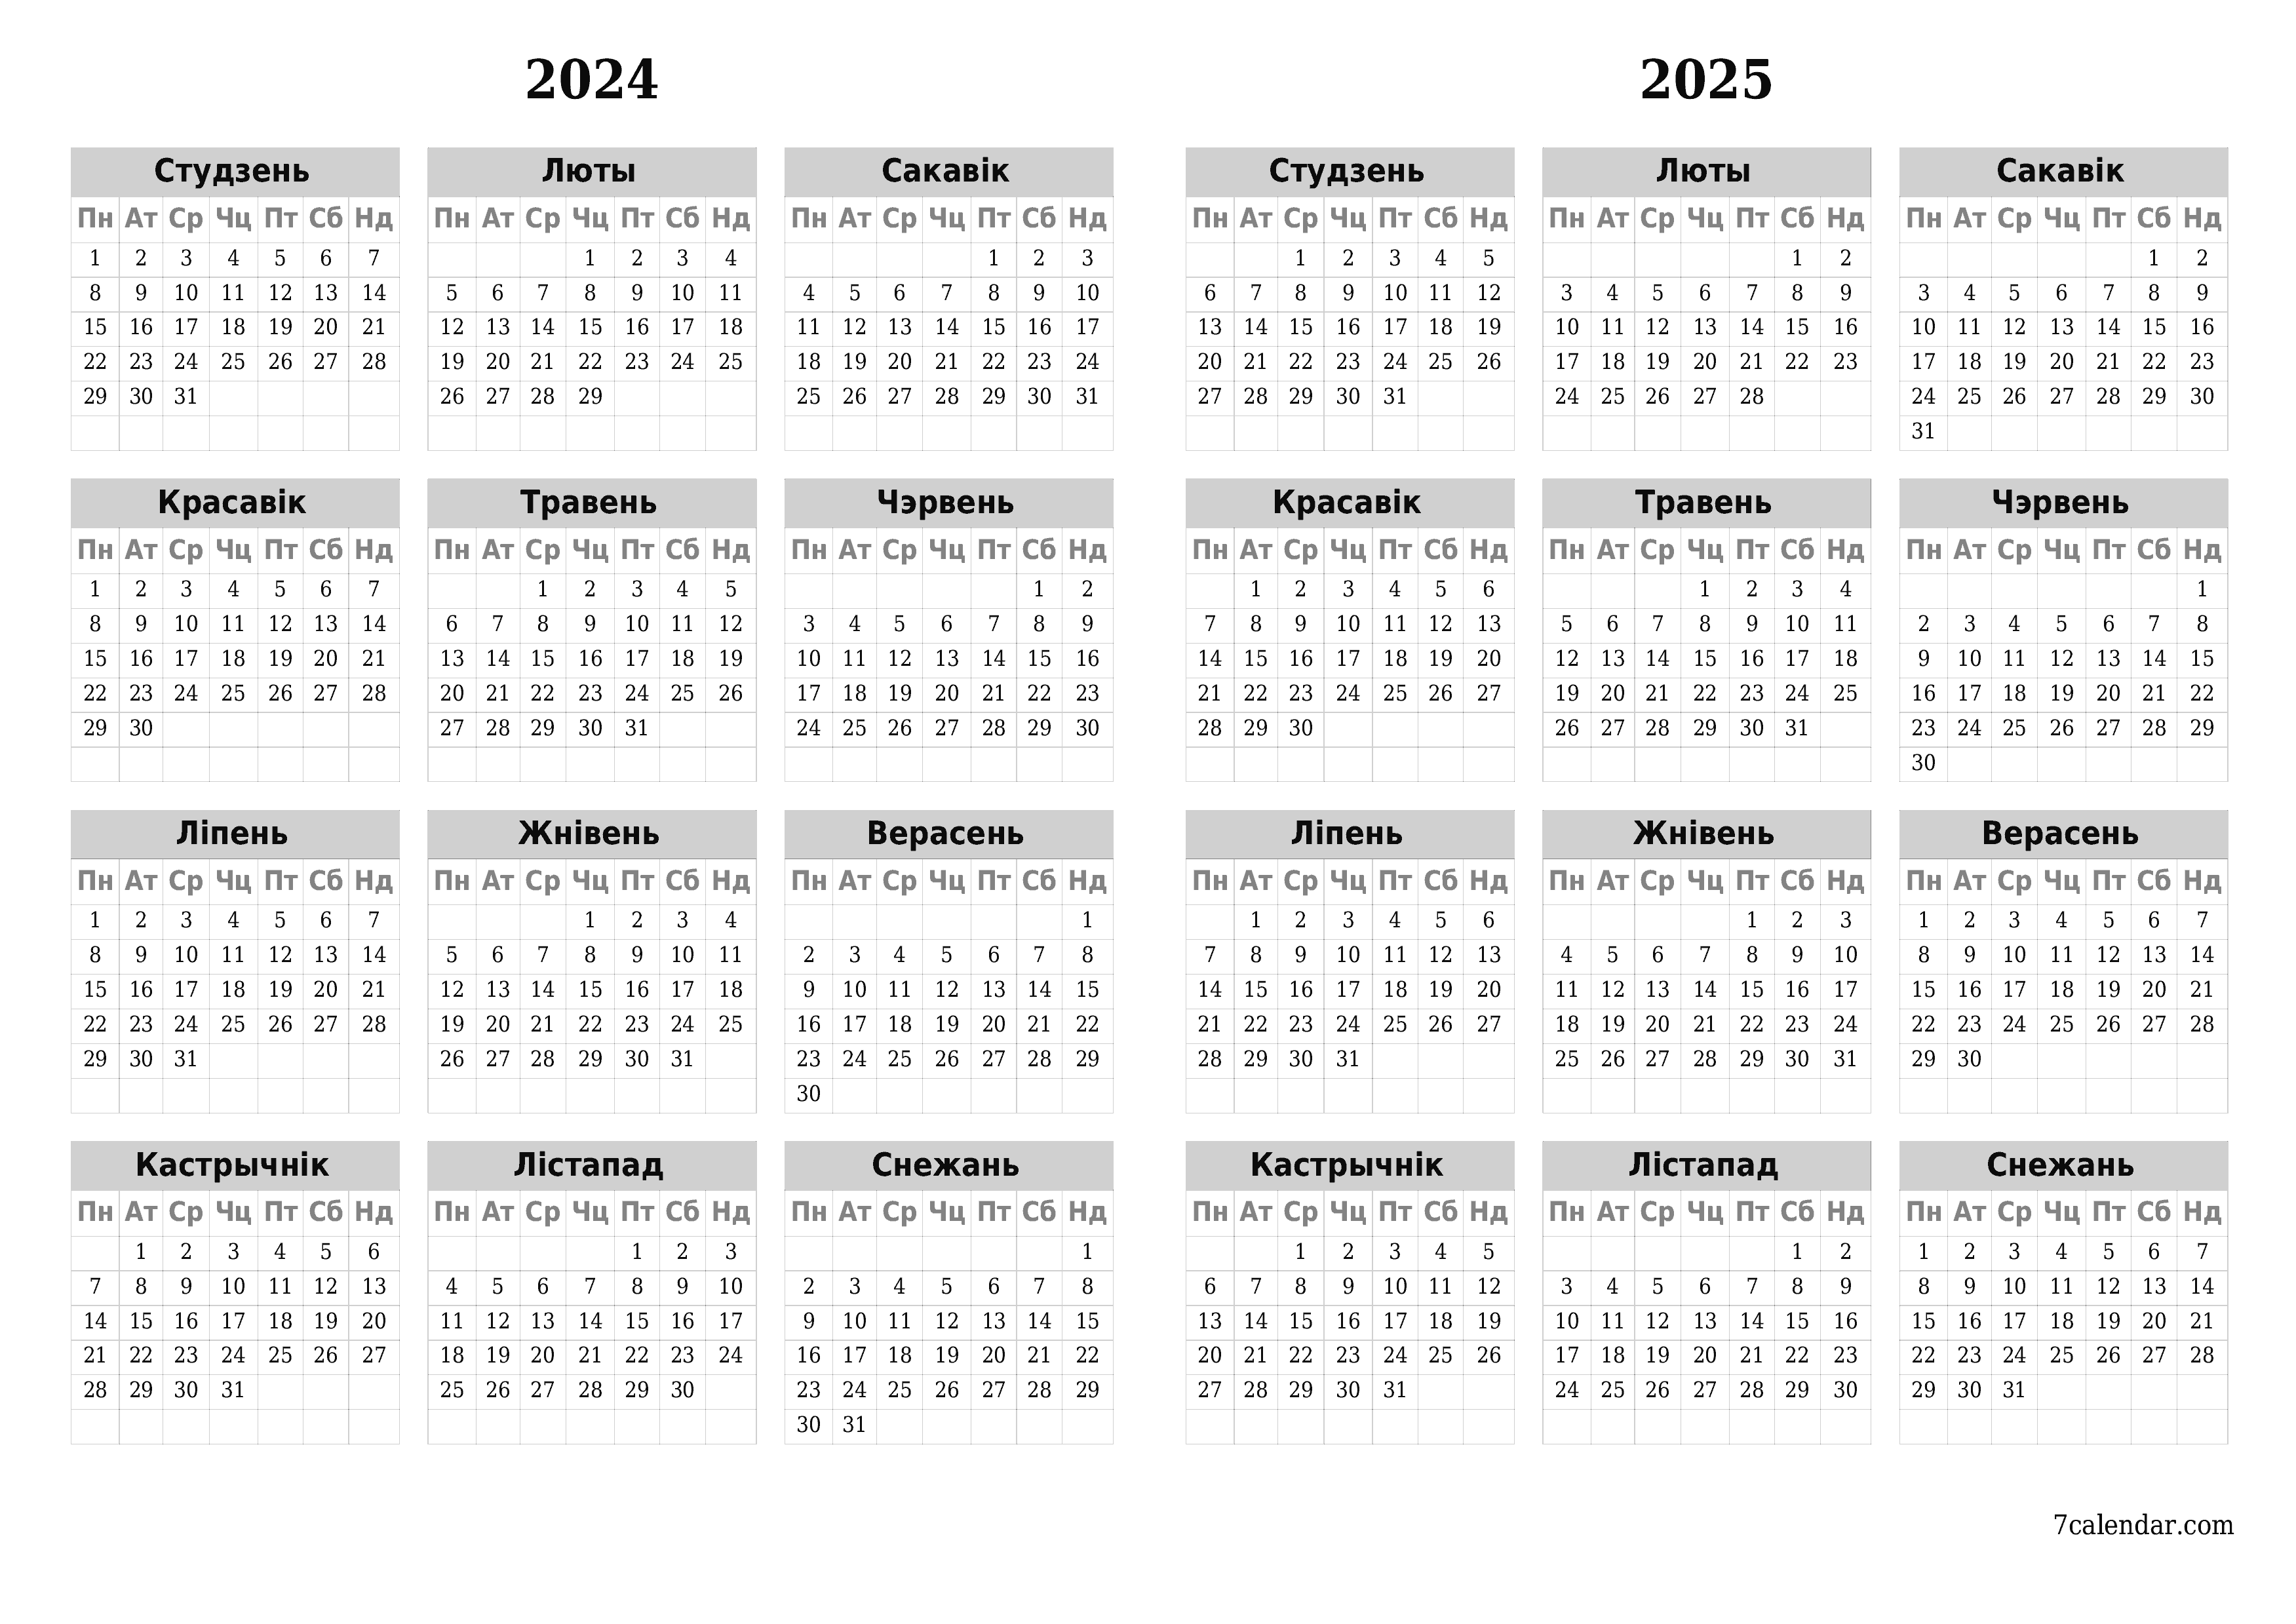  для друку насценны шаблон календара бясплатны гарызантальны Штогадовы каляндар Снежань (Снеж) 2024